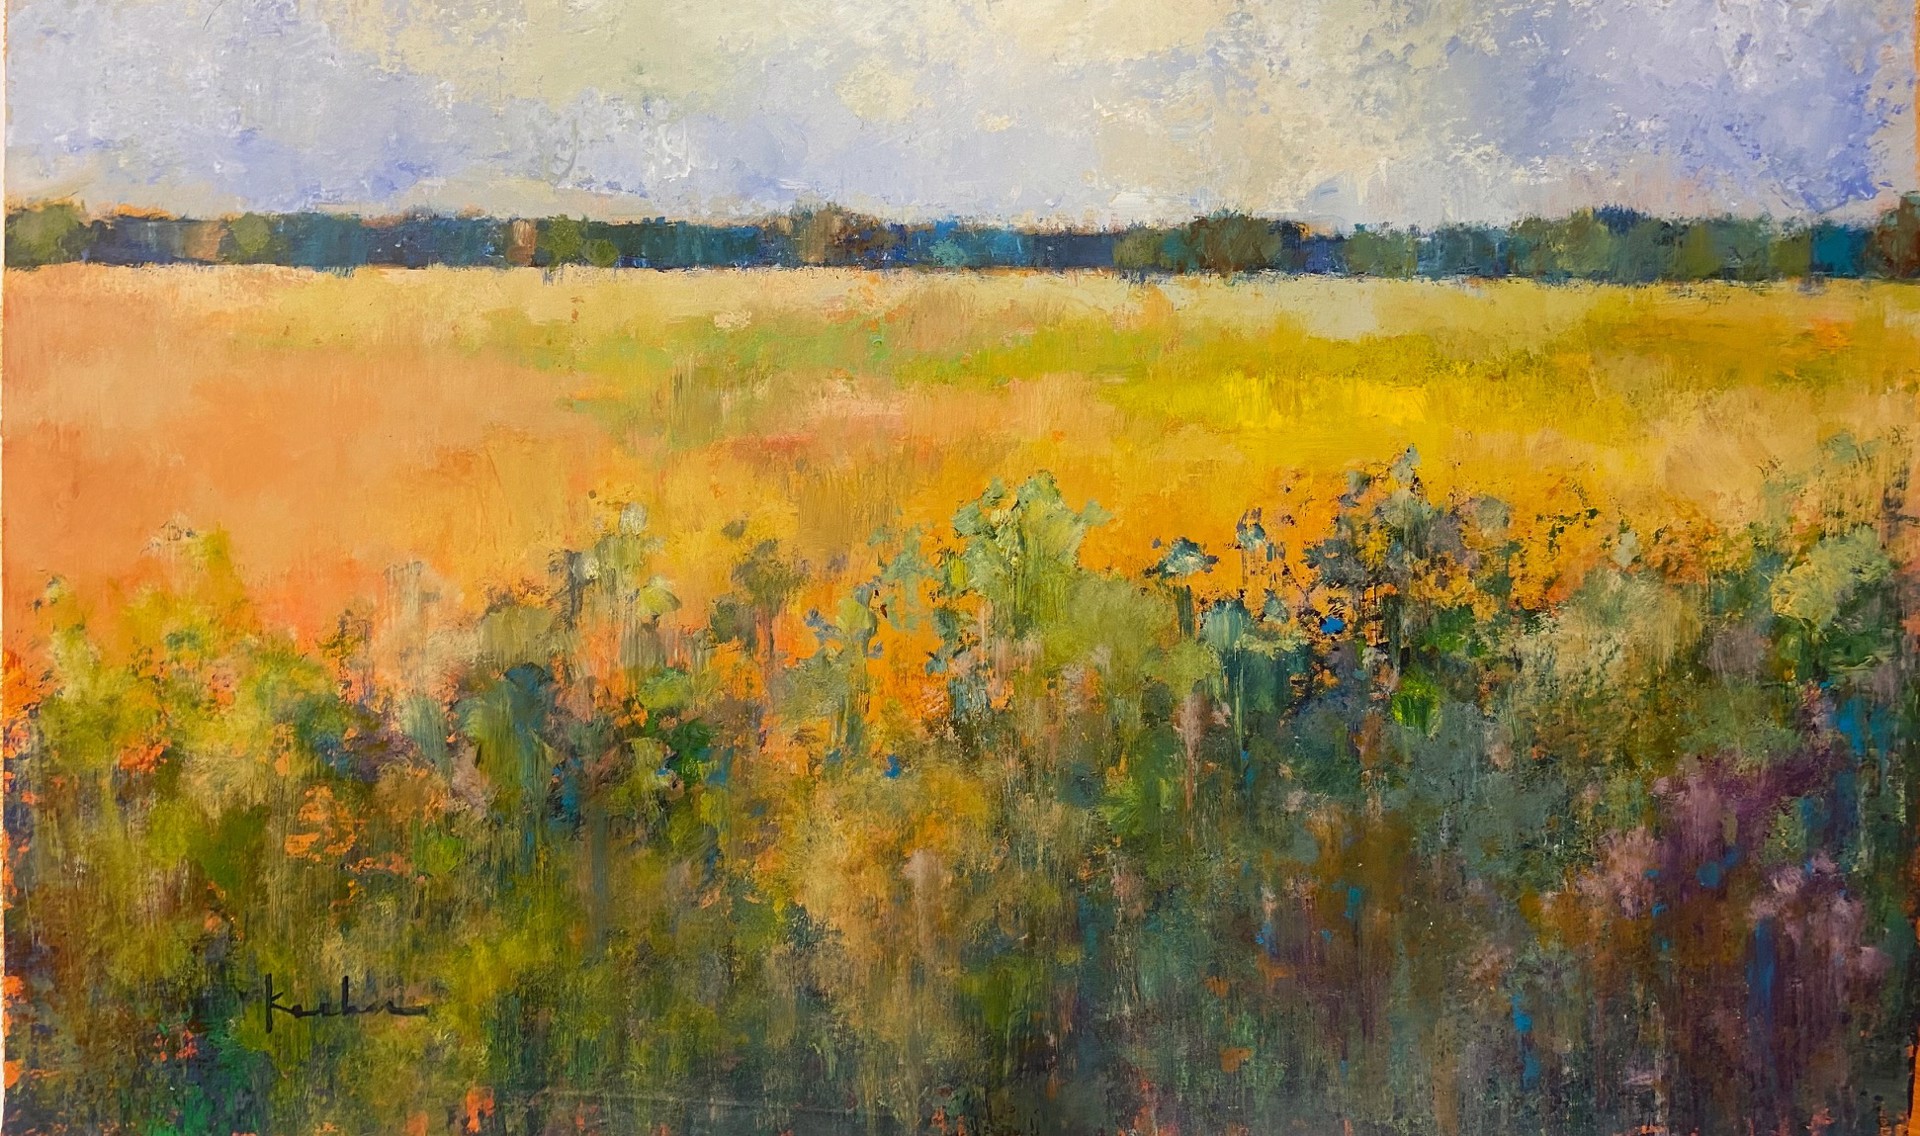 Flower Field by Jeff Koehn